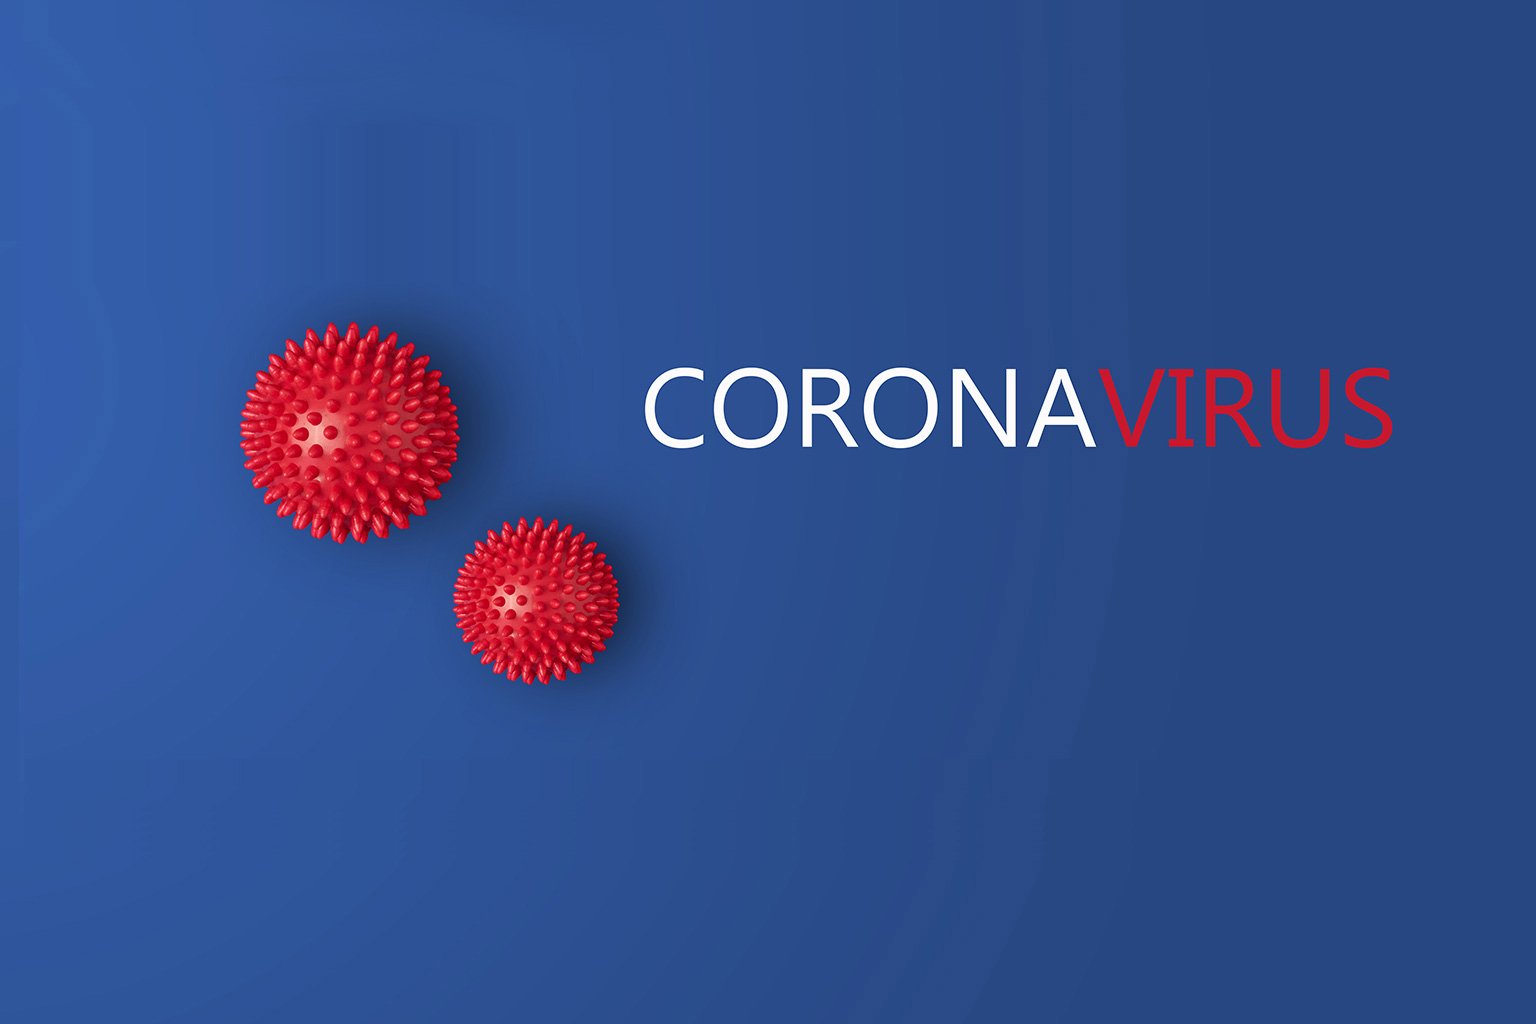 imba red coronavirus